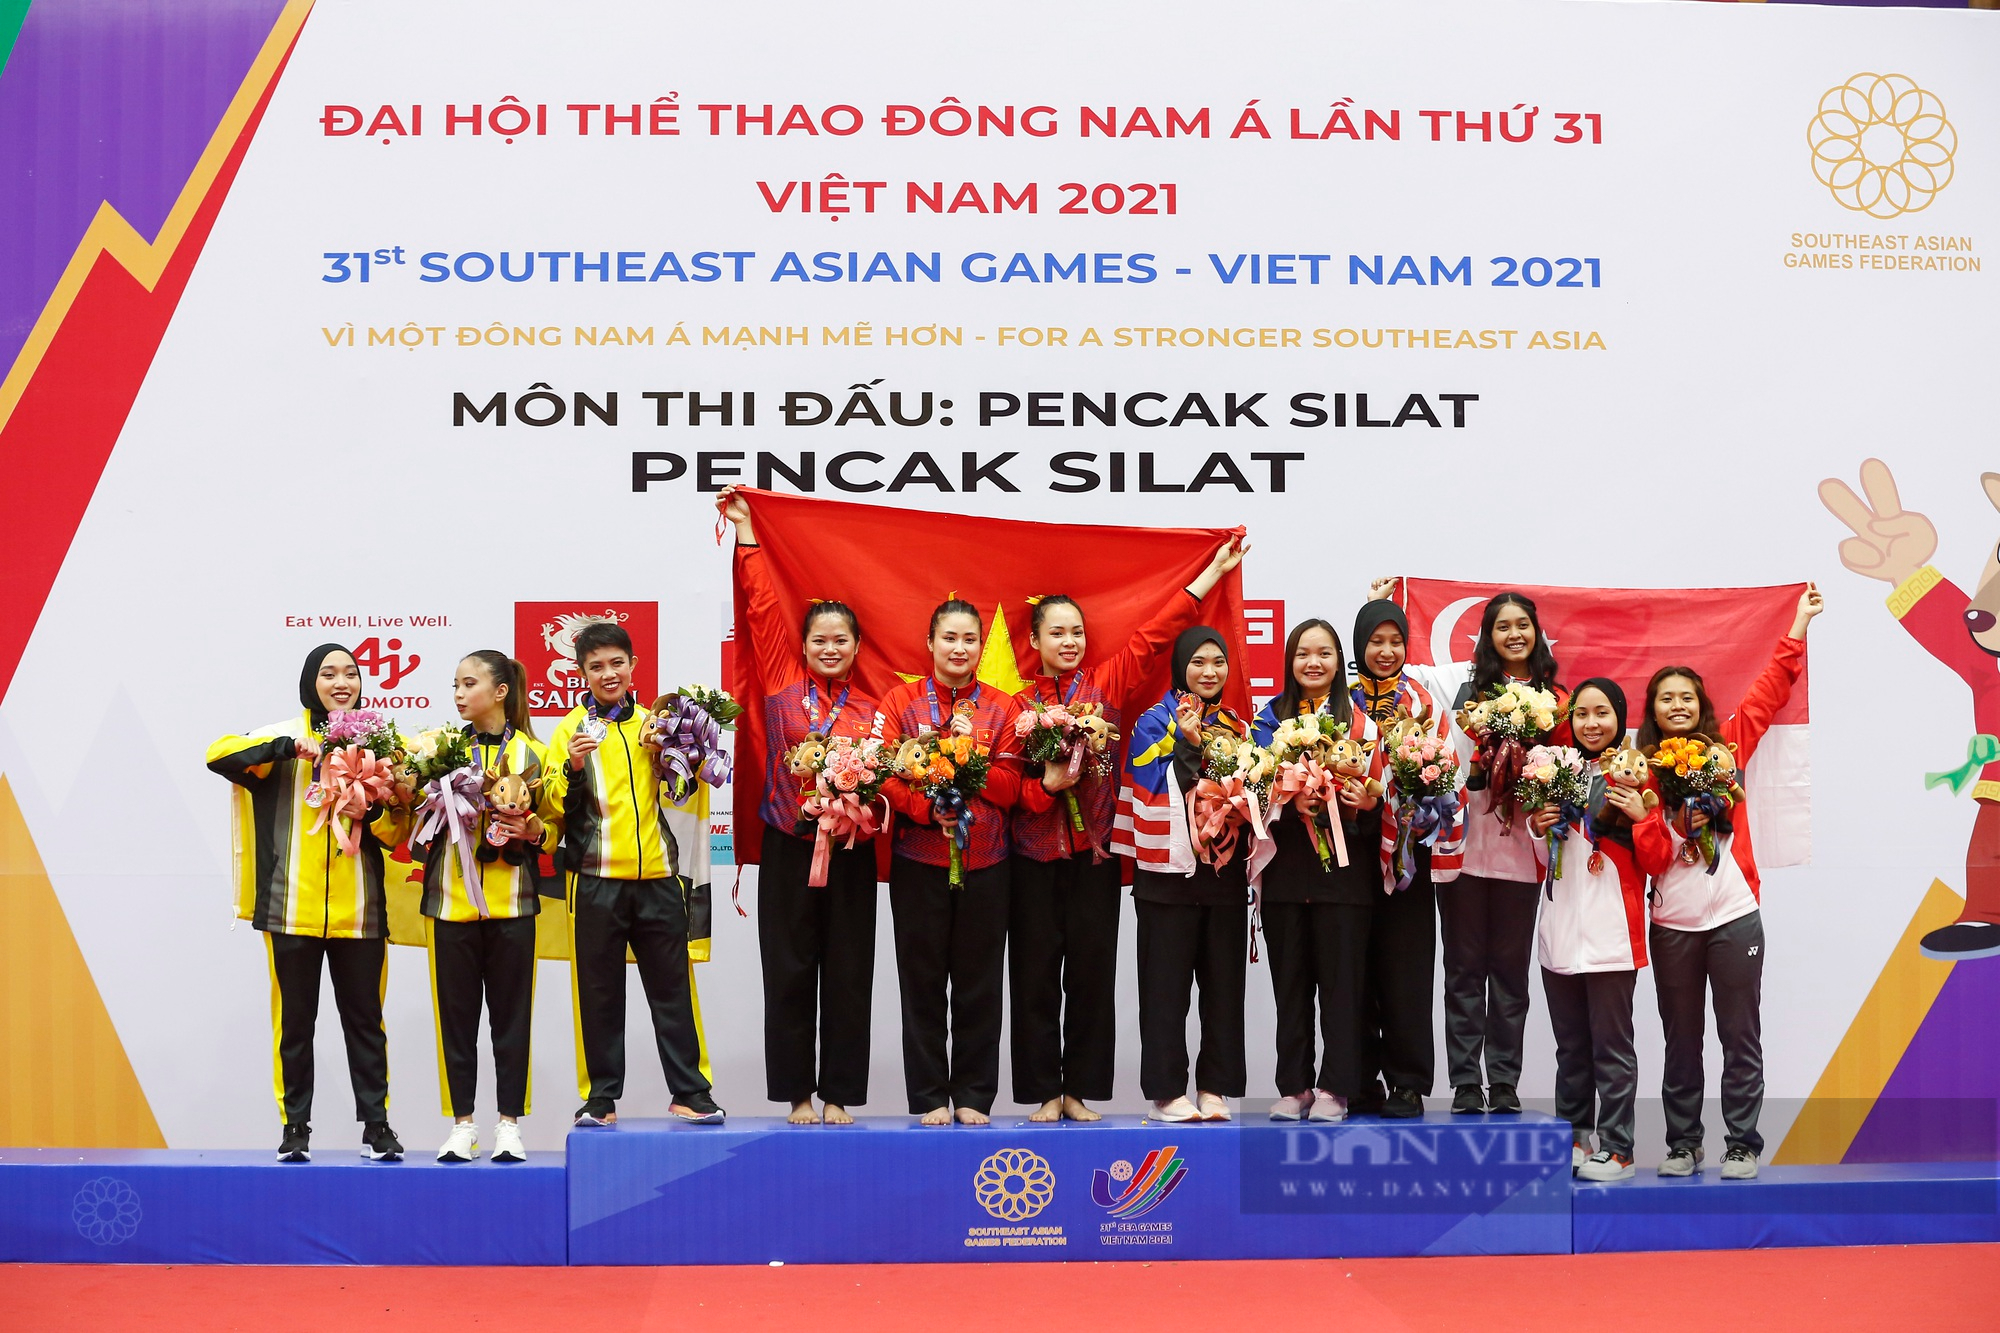 Khoảnh khắc 3 &quot;nữ tướng&quot; Pencak silat Việt Nam thi đấu và nhận huy chương vàng đầy cảm xúc - Ảnh 9.